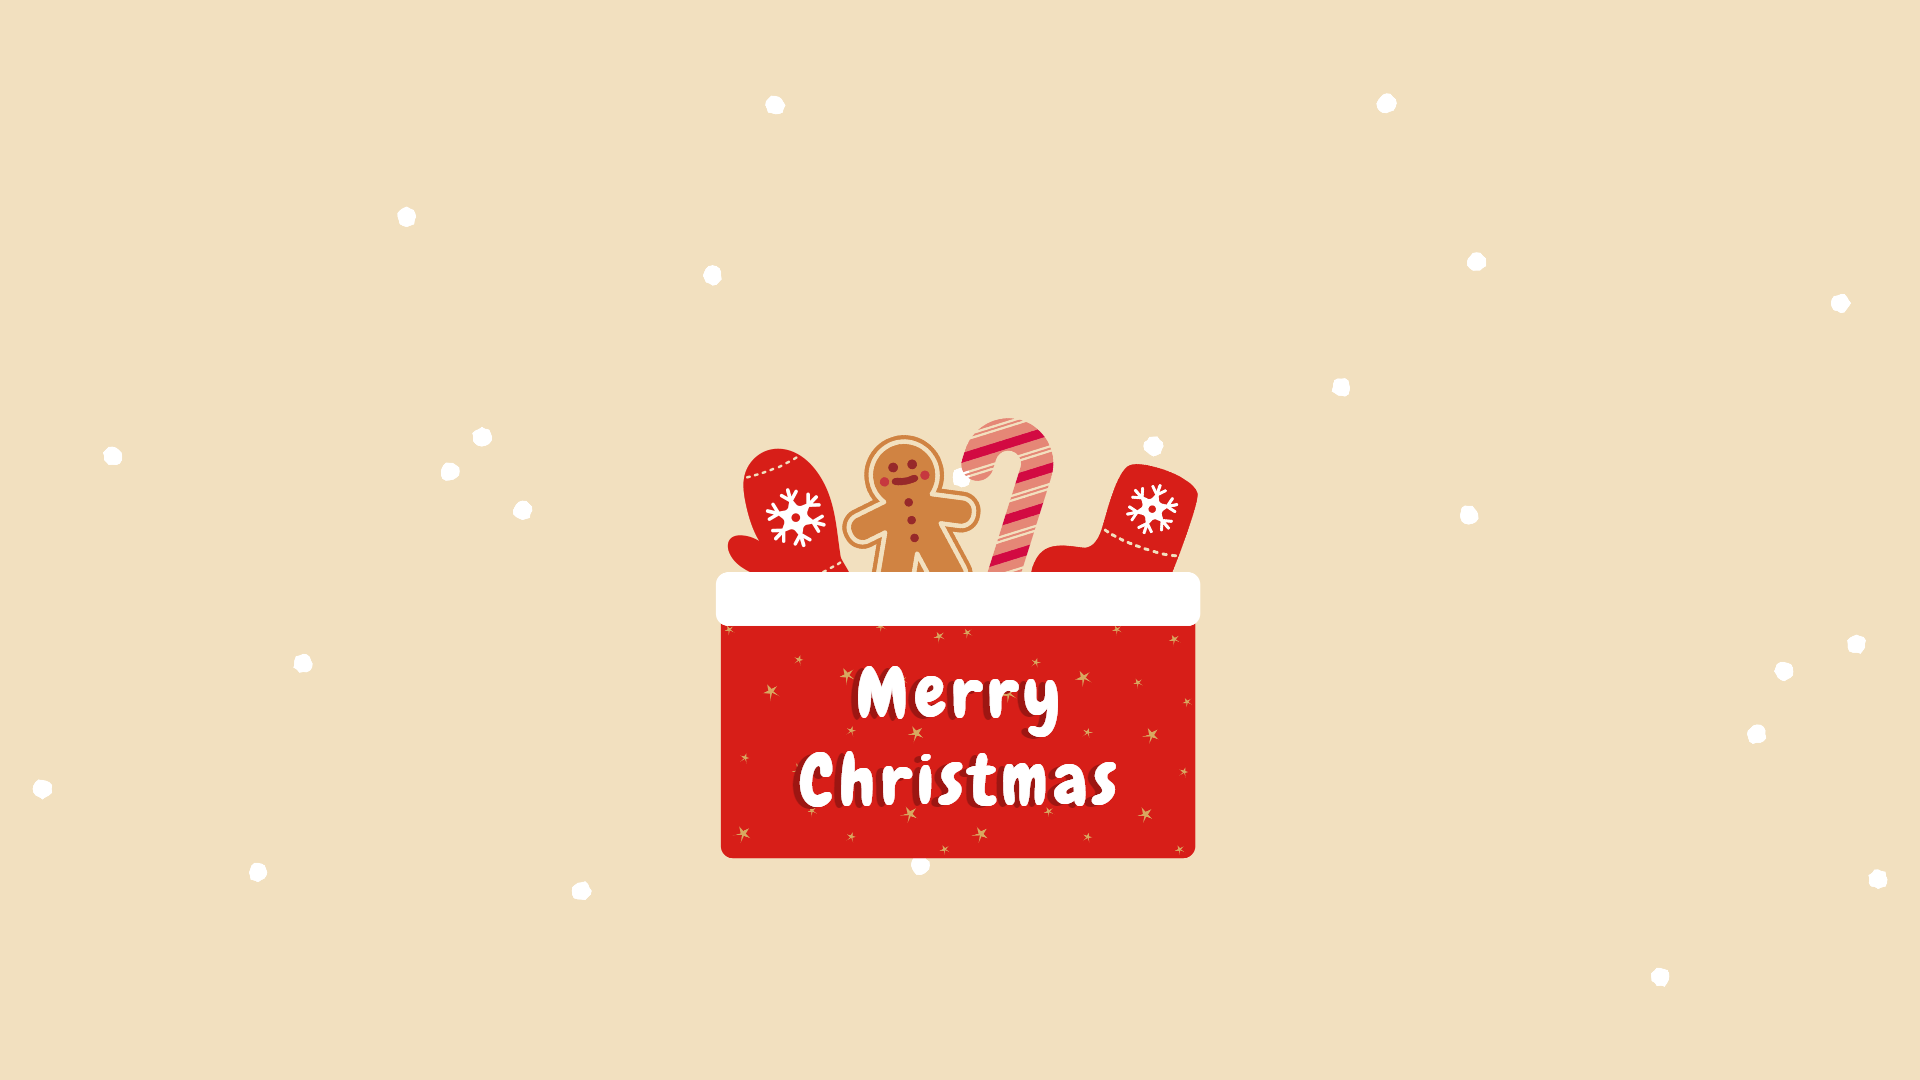  Windows Weihnachten Hintergrundbild 1920x1080. Christmas Wallpaper & Background for Your Holiday Celebration